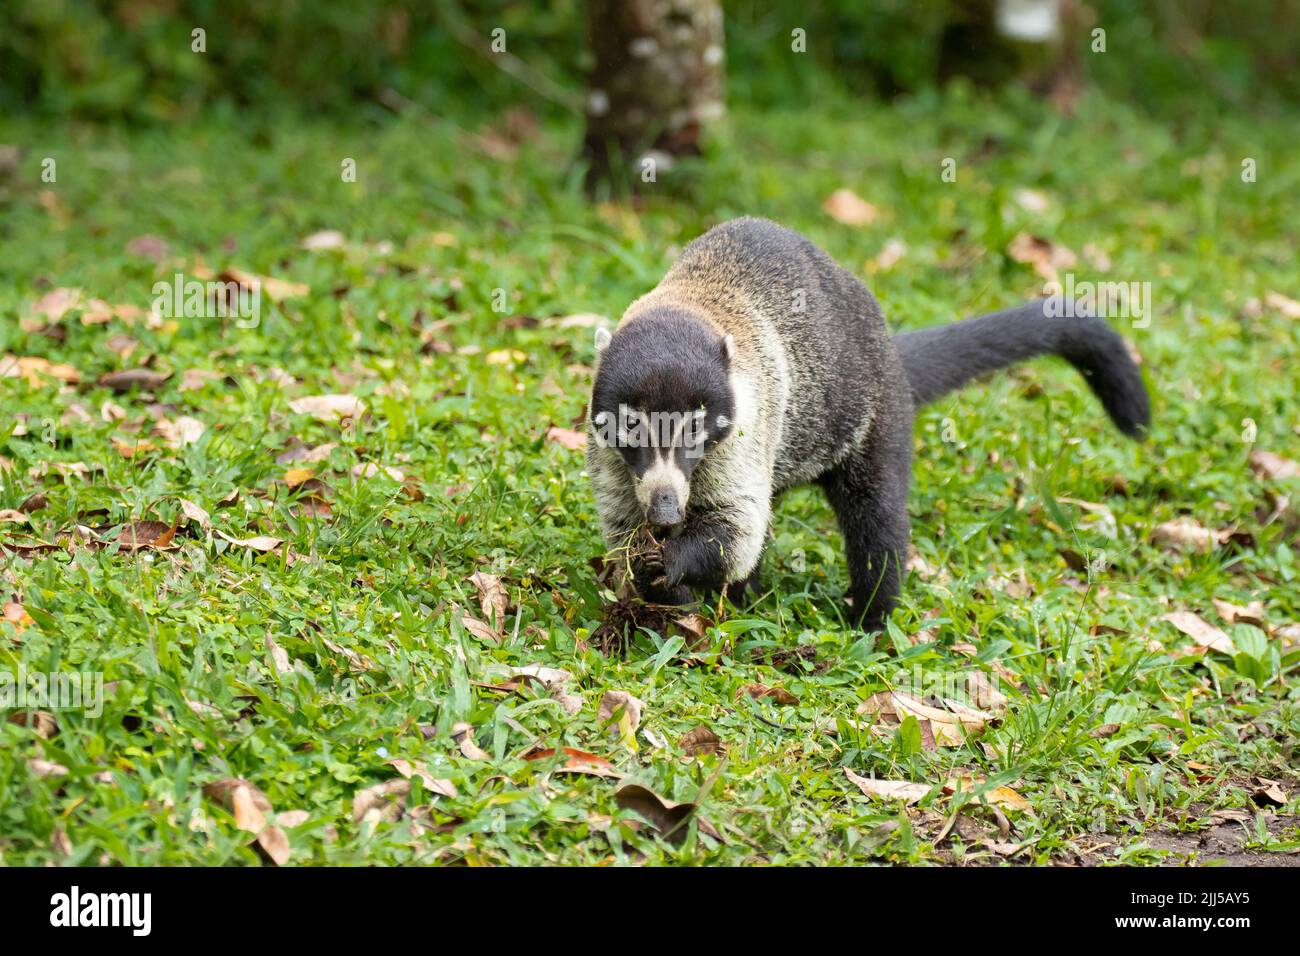 Coati d'Amérique centrale (Nasua narica), également connu sous le nom de coatimundi, fourragent sur le terrain Banque D'Images